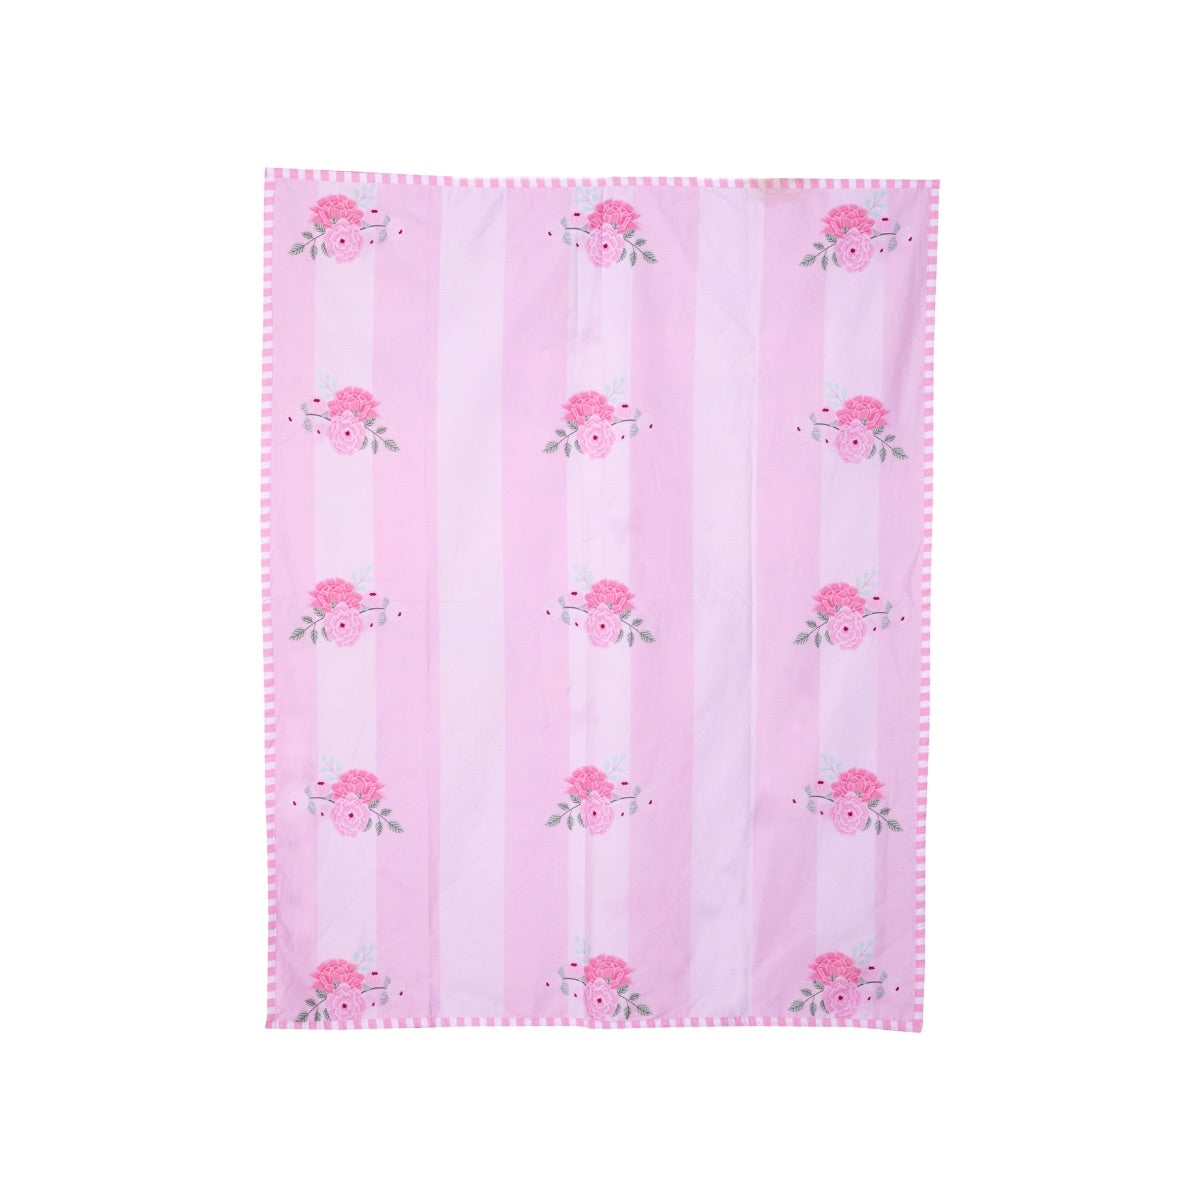 Little By Little Floral & Flutter Cot Bedding Set with Dohar Blanket, Pink